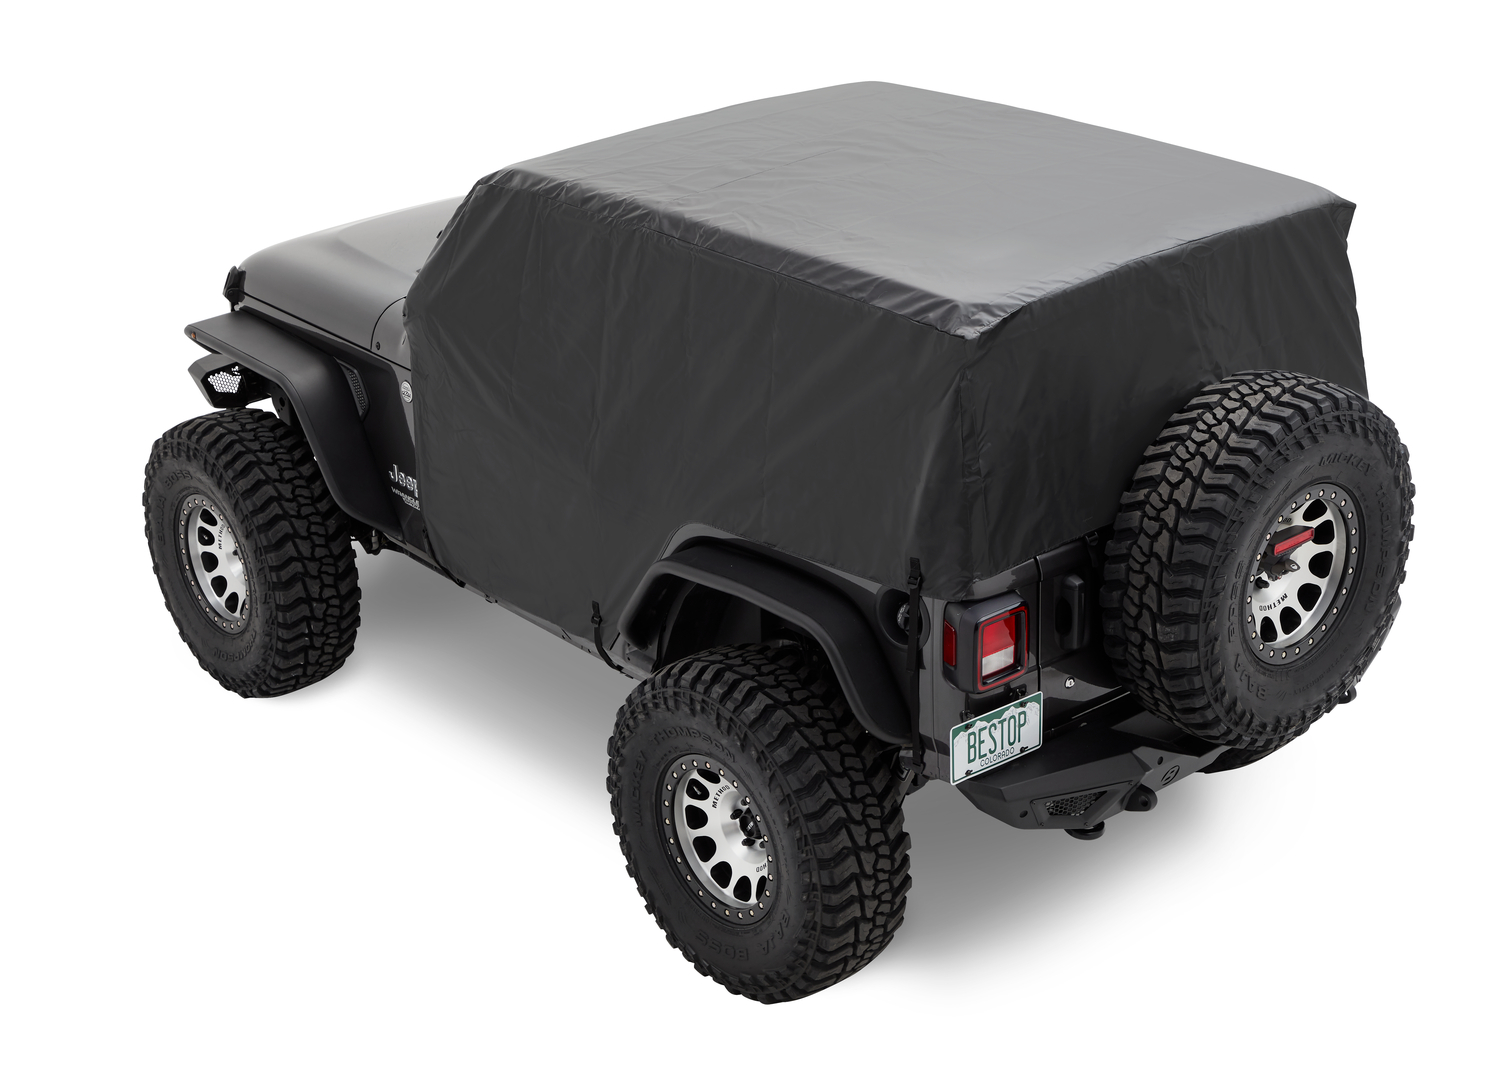 Bestop Jeep Wrangler JK, Wrangler JL, 2-Door, For Hard Top, Soft Top or No  Top Installed Trail Cover - 81044-01